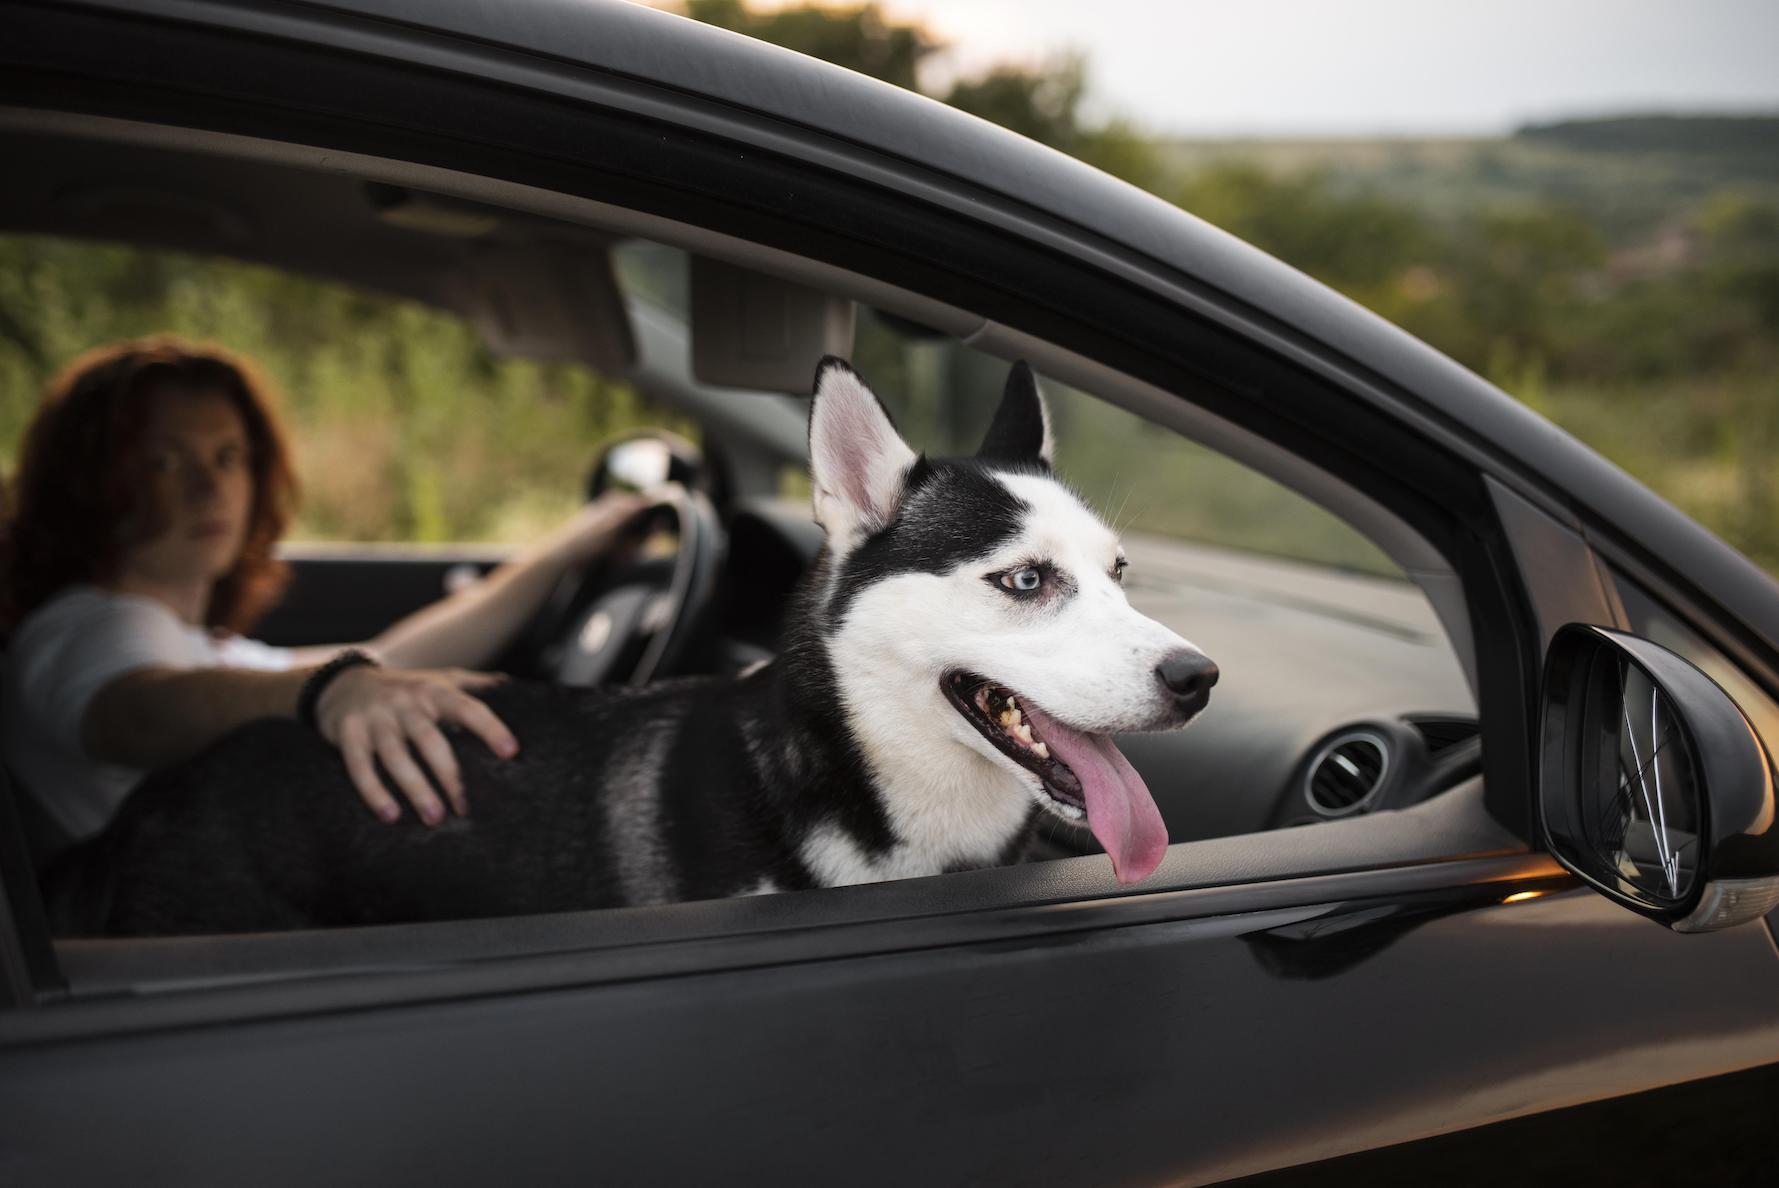 Comment supprimer l'odeur de chien dans une voiture ?